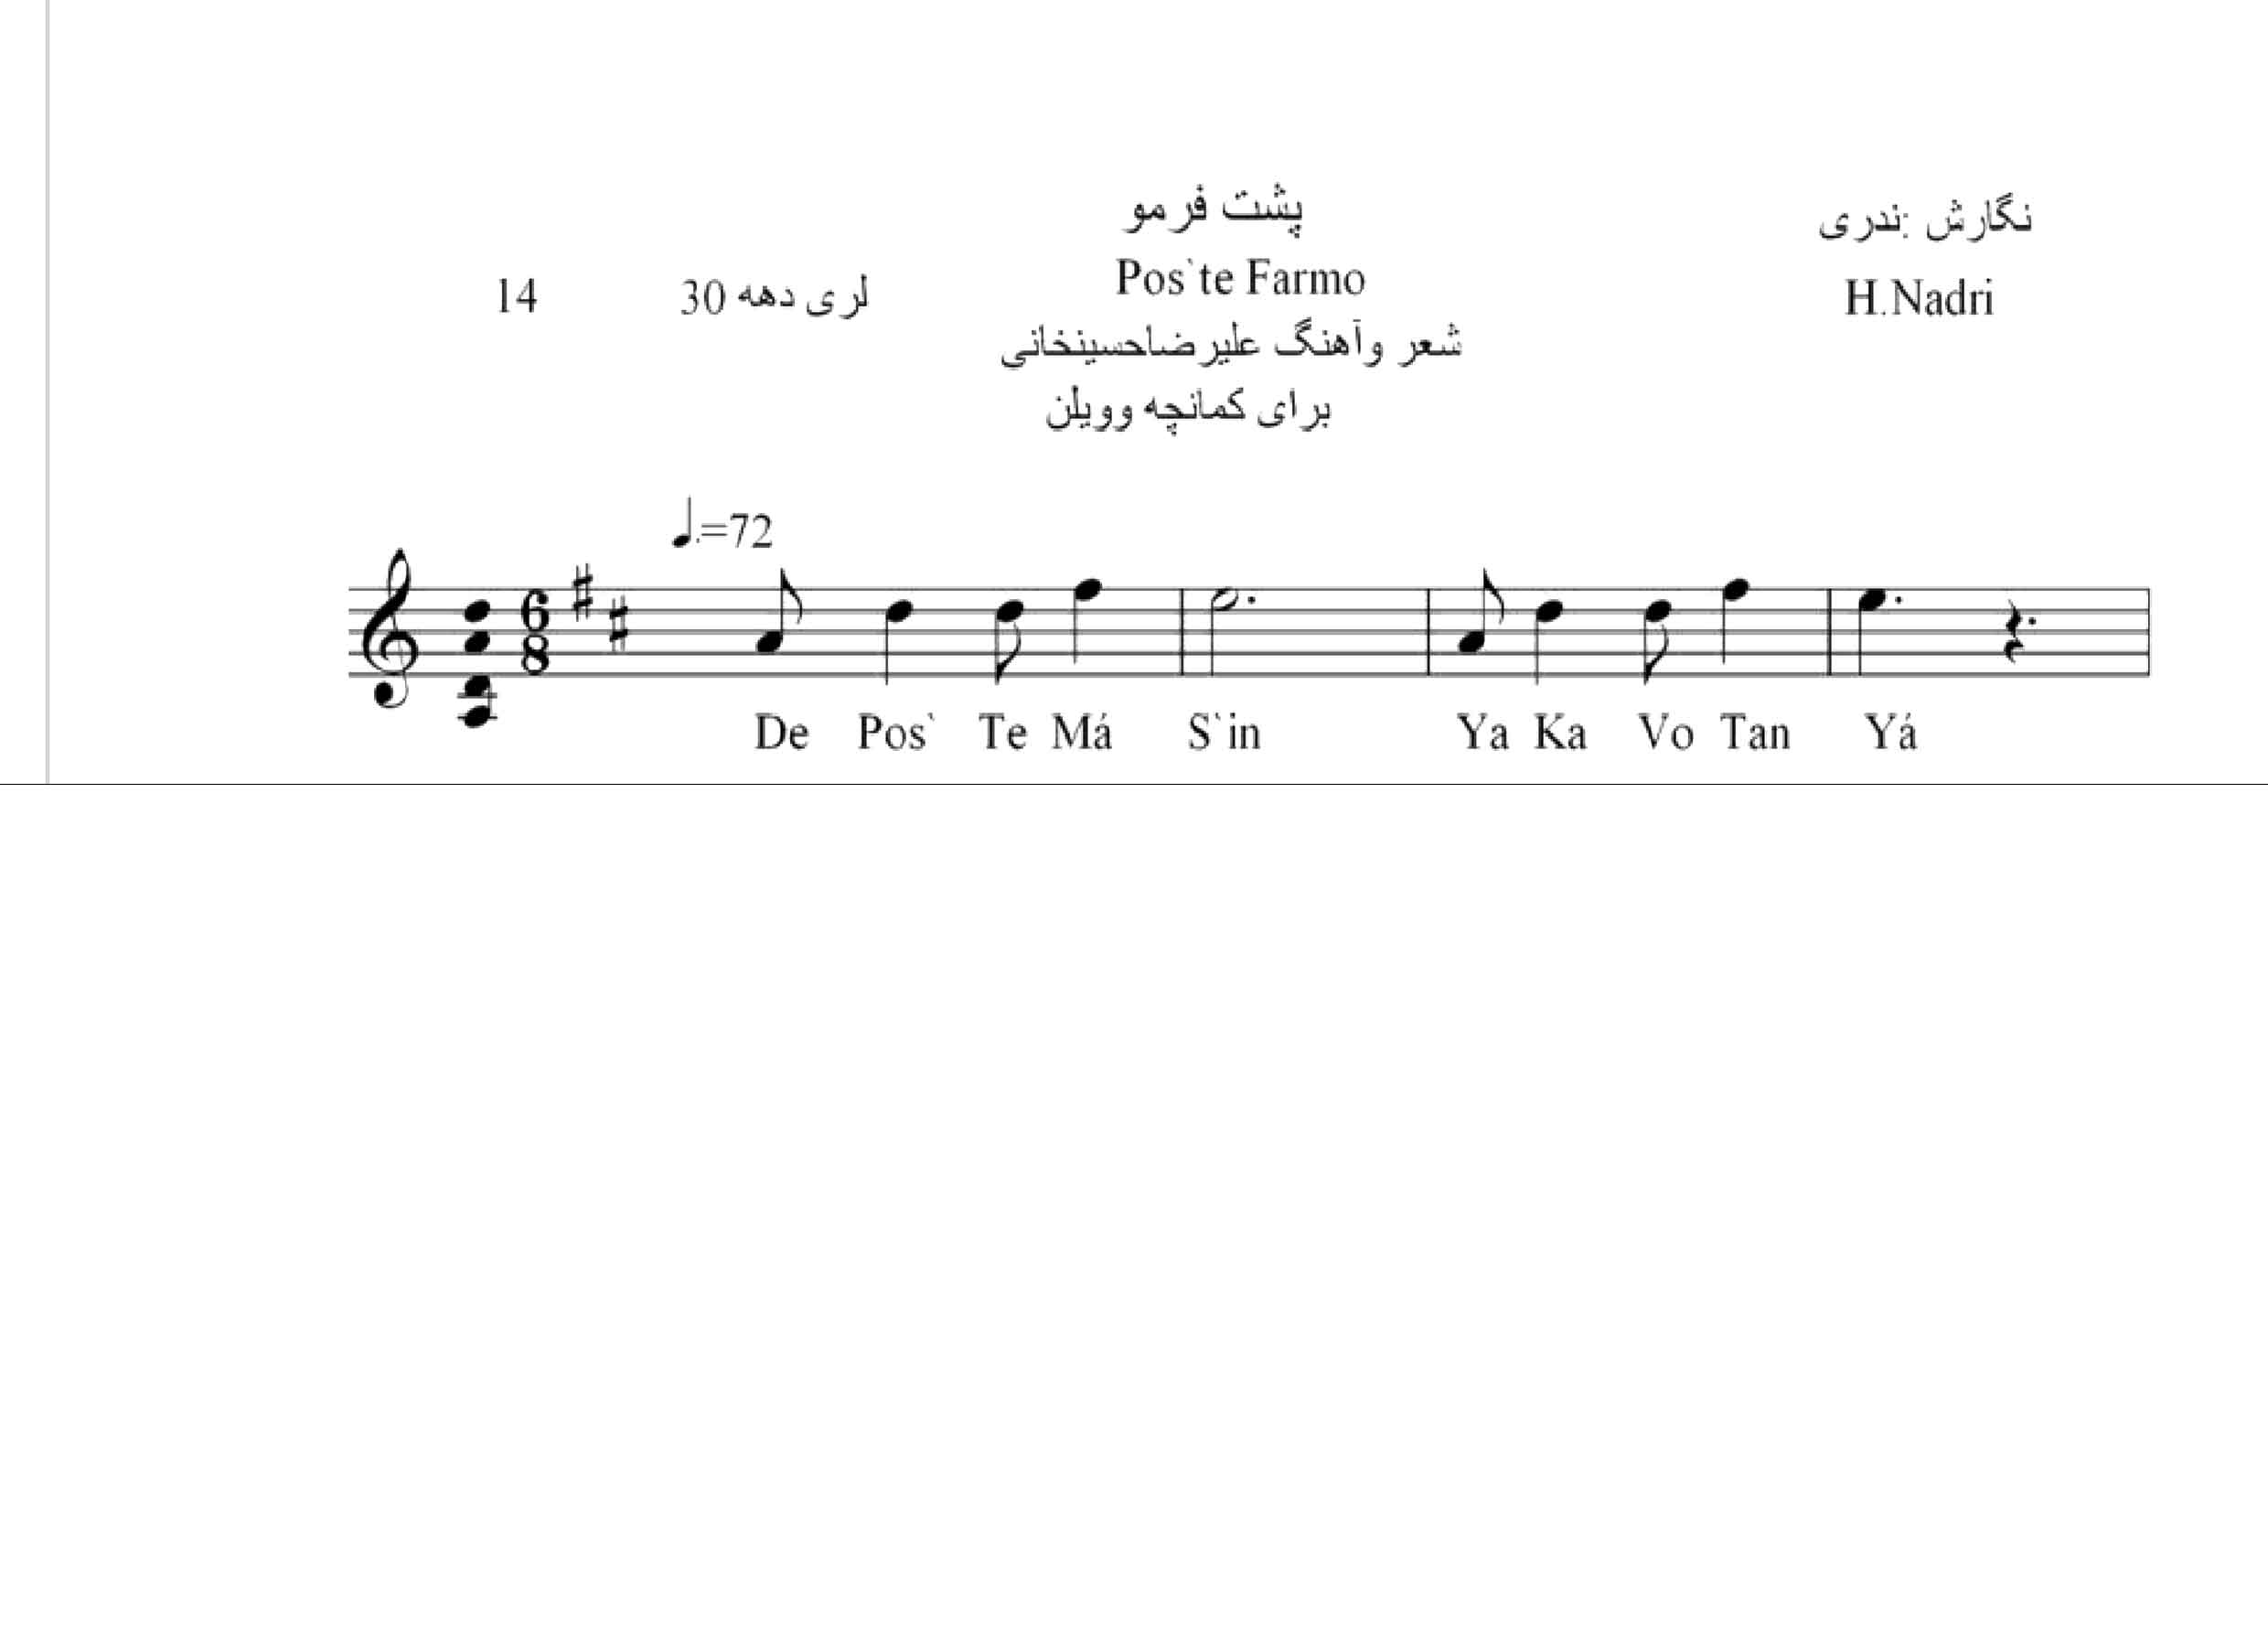 نت آهنگ پشت فرمو محلی لری حجت اله ندری قابل اجرا با کمانچه و دیگر سازها